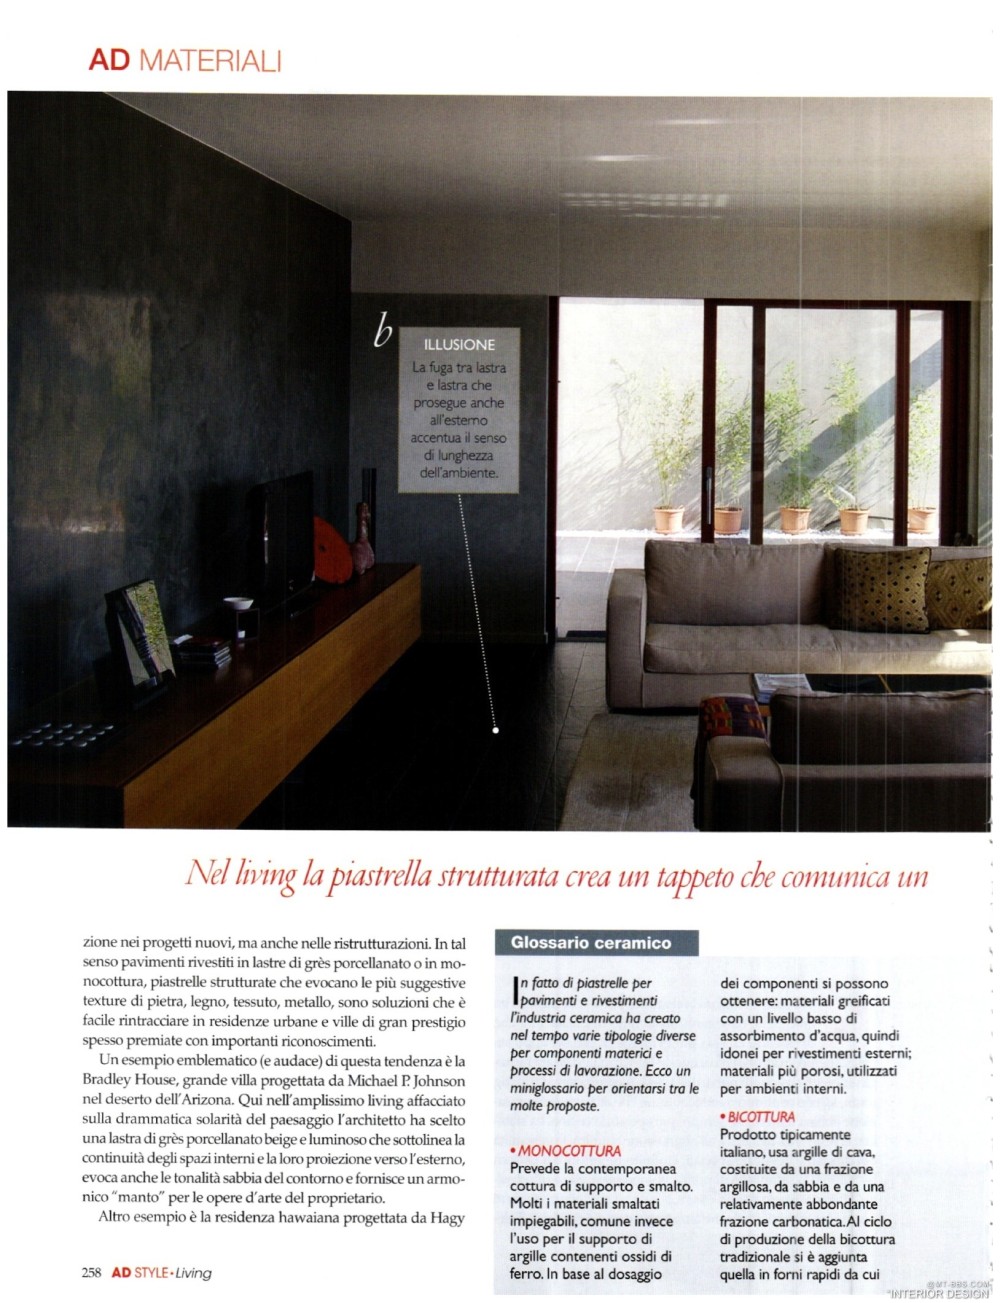 意大利AD 杂志 2012年全年JPG高清版本 全免（上传完毕）_0034.jpg